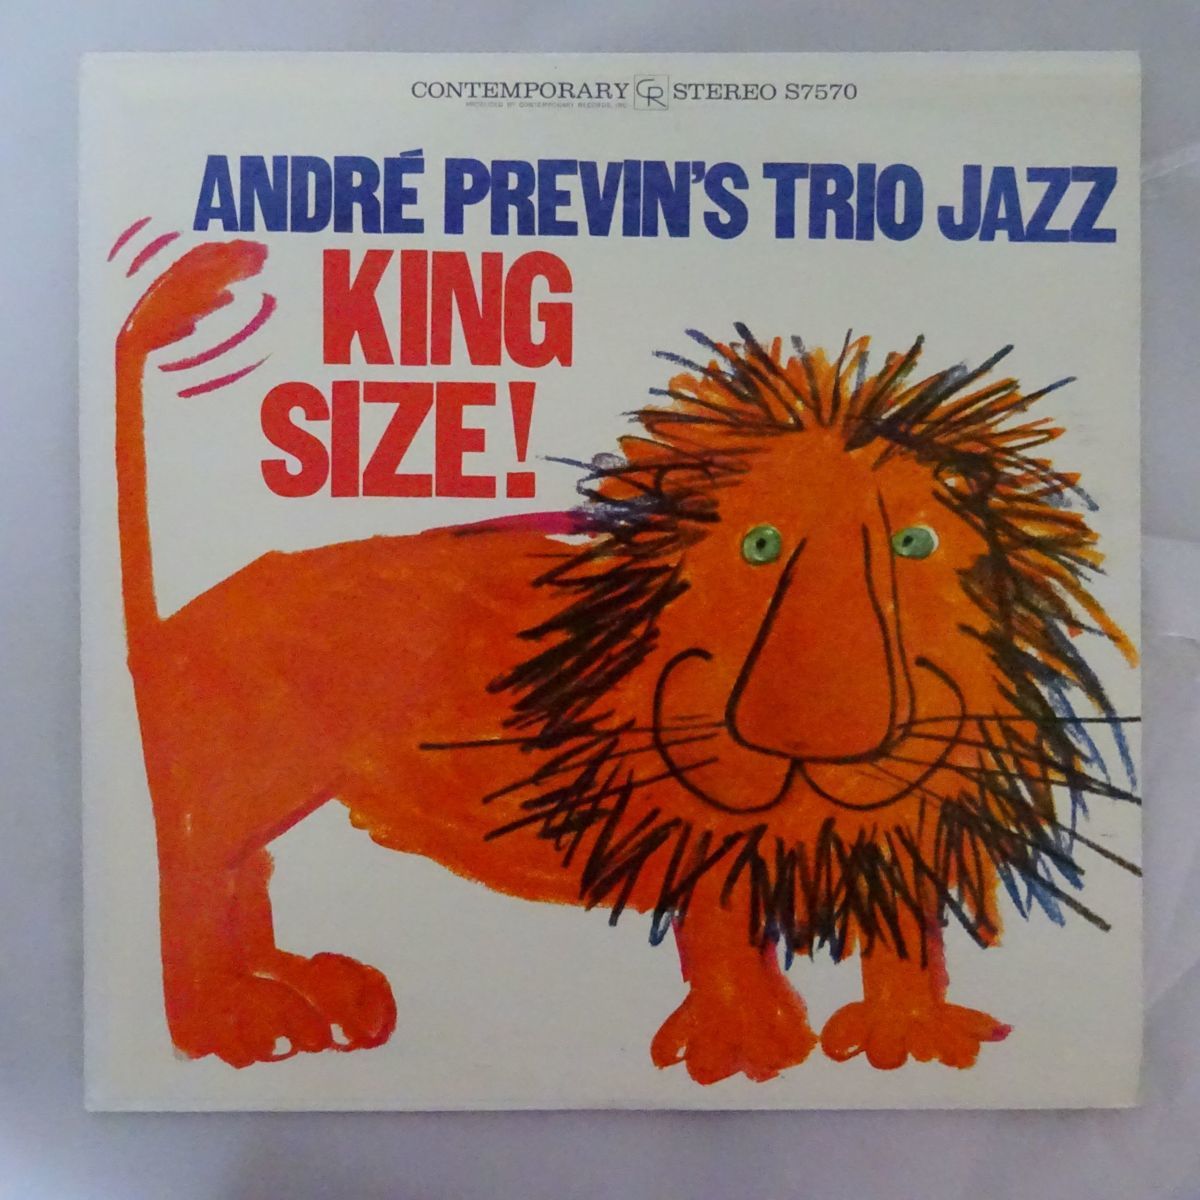 14001712;【美盤/US盤/CONTEMPORARY/艶ラベル】Andre Previn's Trio Jazz / King Size!_画像1